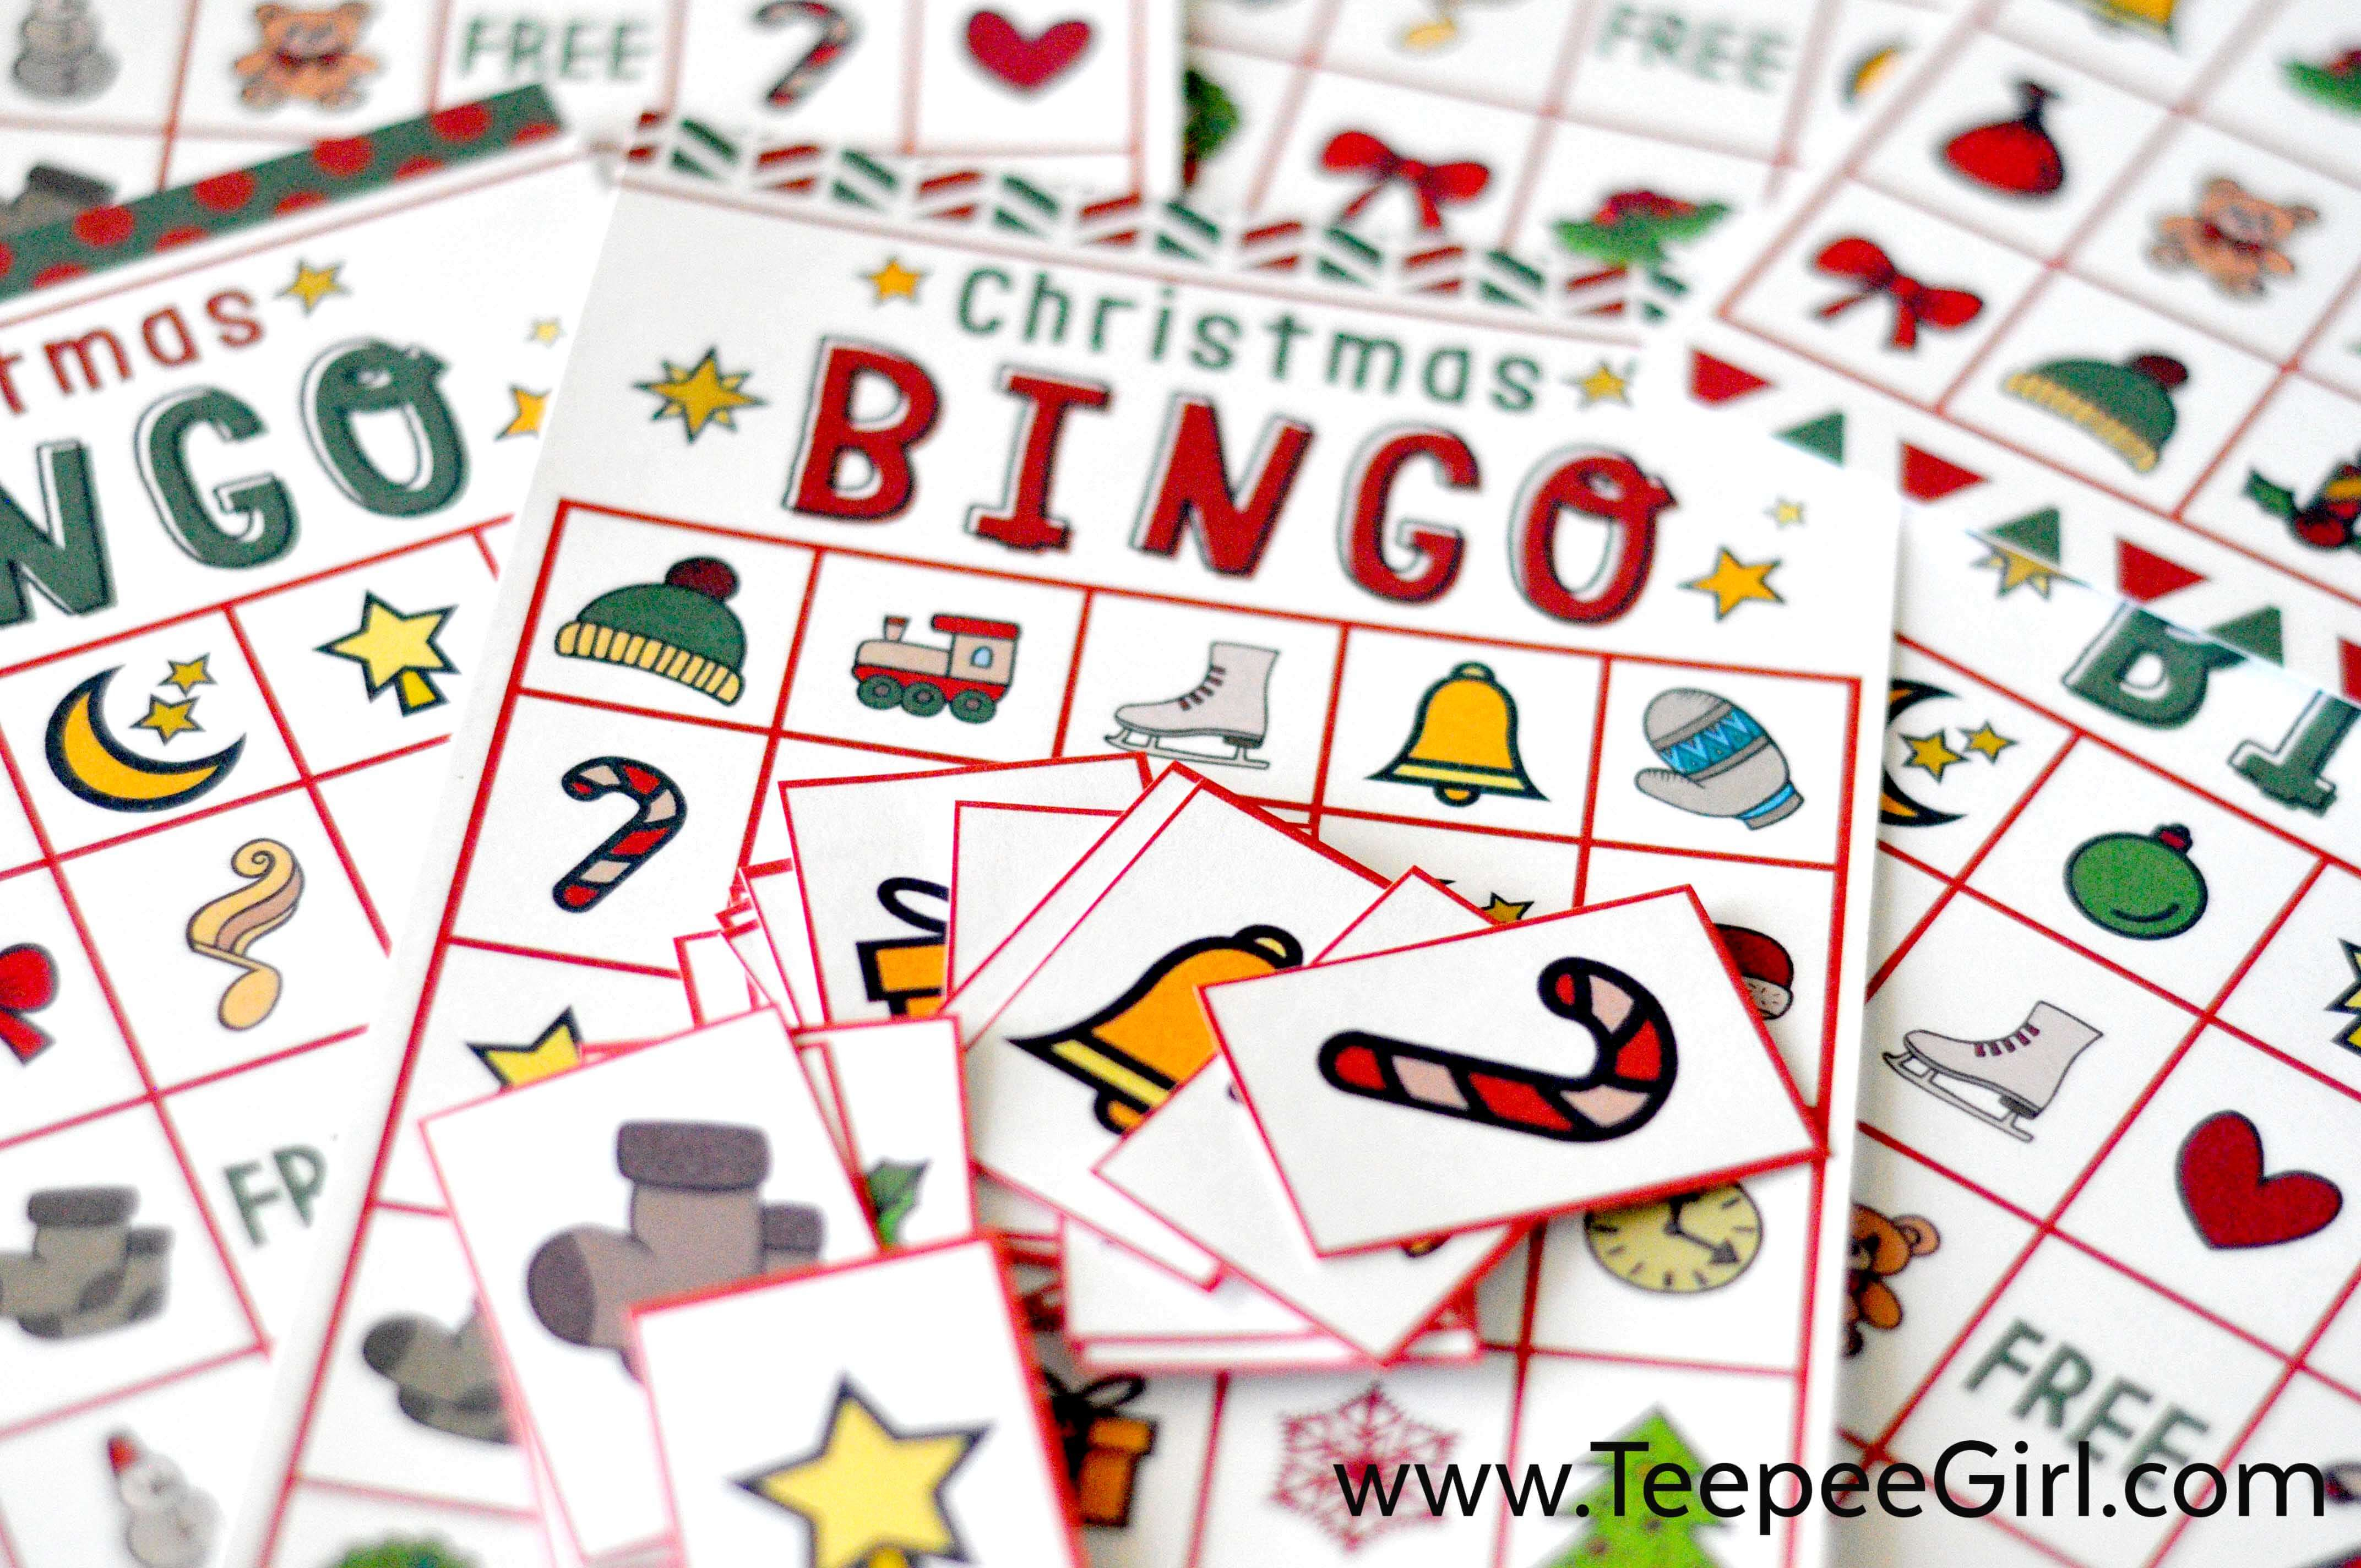 Free Christmas Bingo Game Printable - Christmas Bingo Game Printable Free